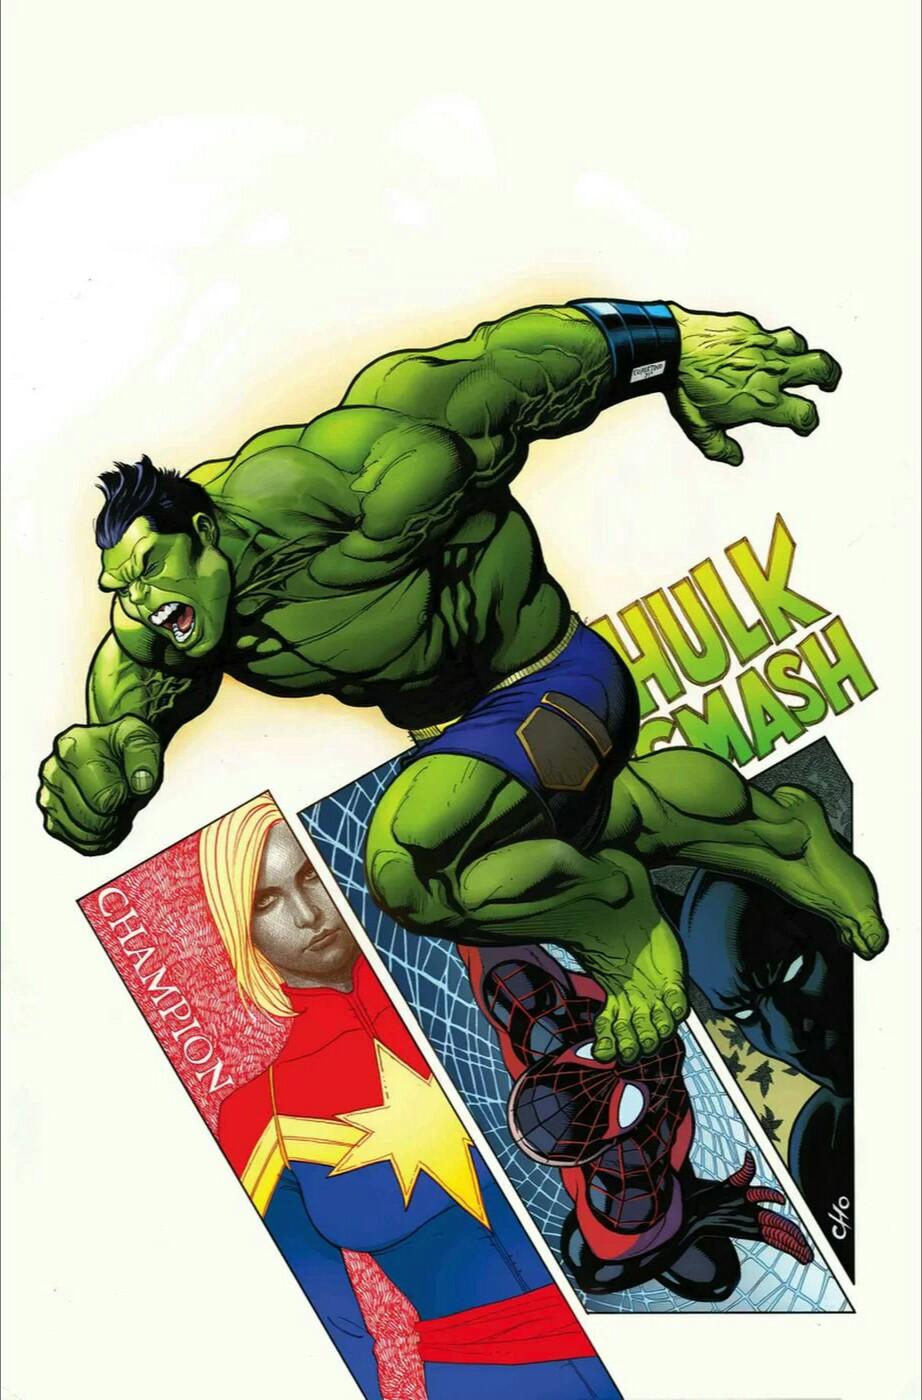 The Incredible Hulk Vol. 1 #717